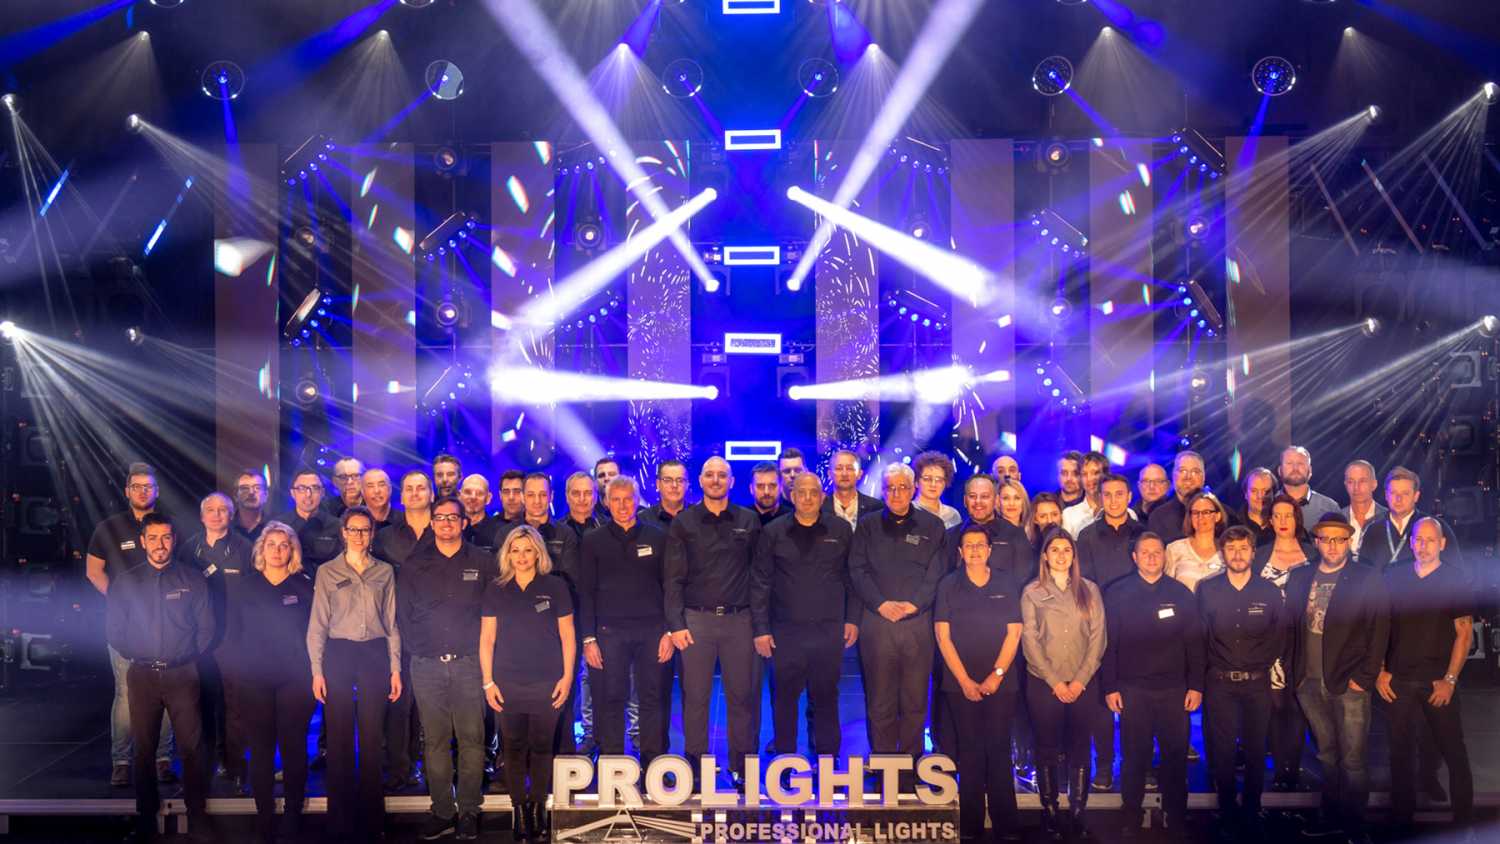 The Music & Lights Frankfurt team